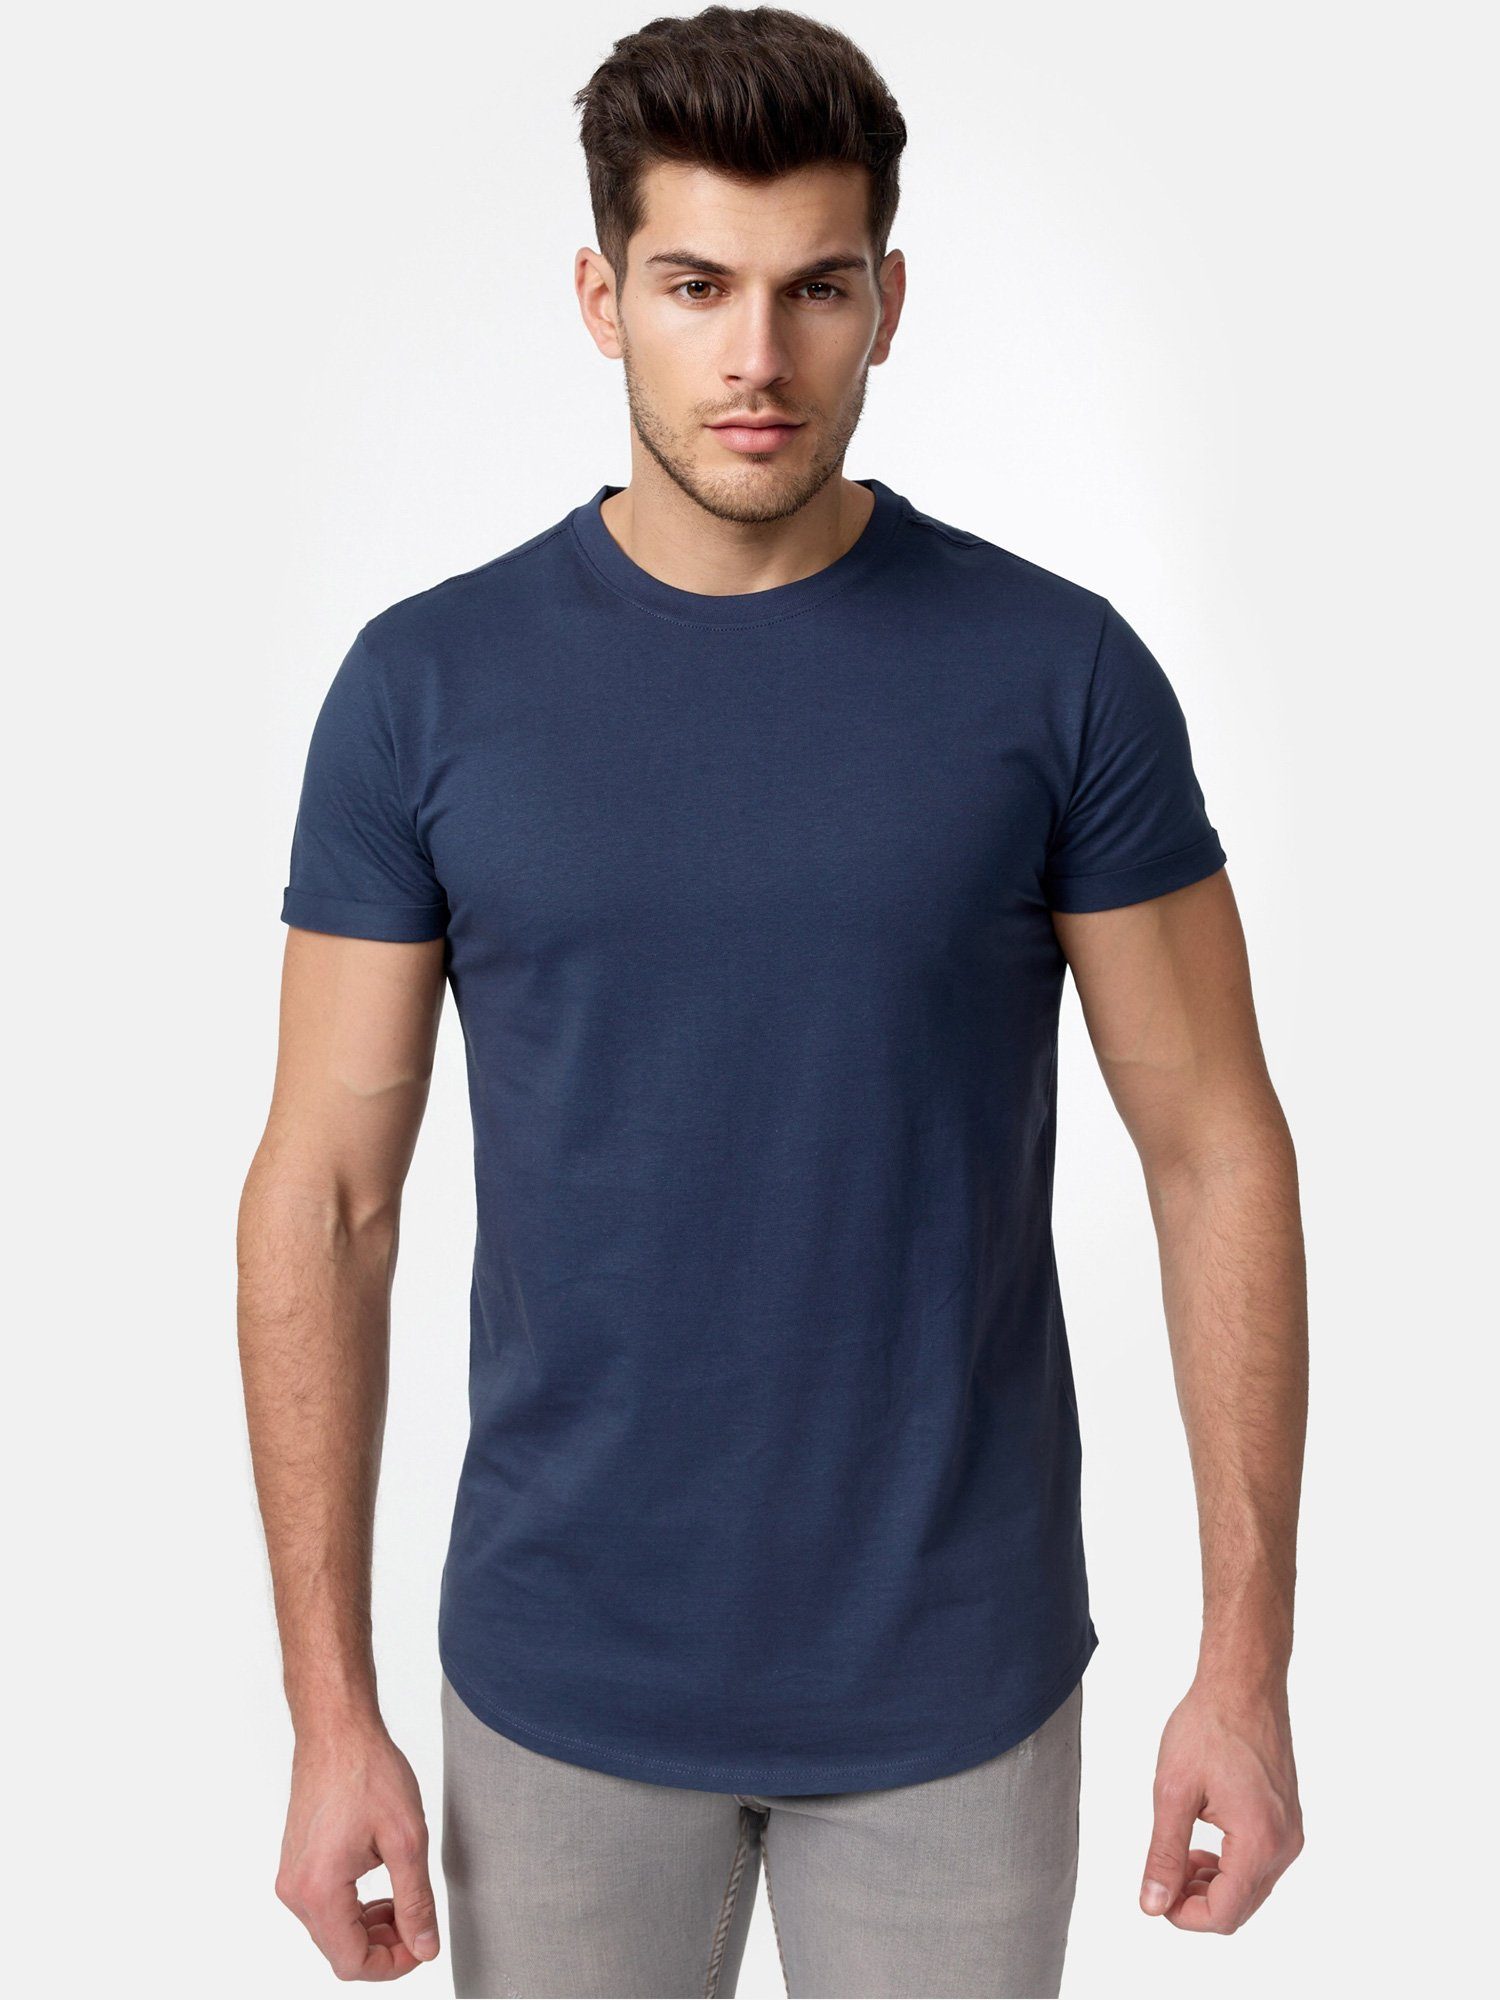 T-Shirt Herren Rundhalsshirt Tazzio navy E105 Basic